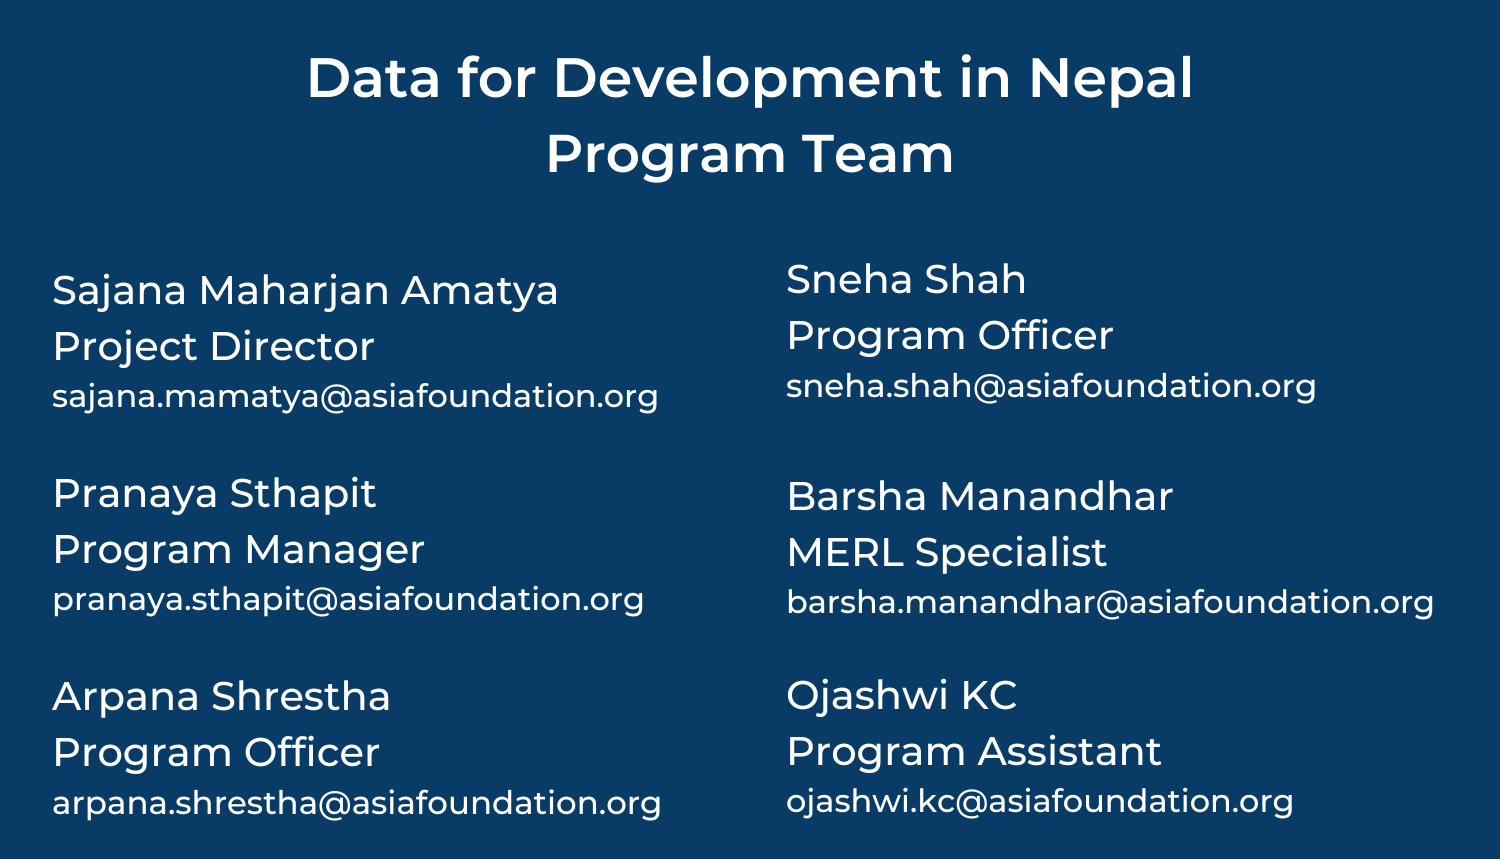 Data for Development in Nepal Program Team (1)